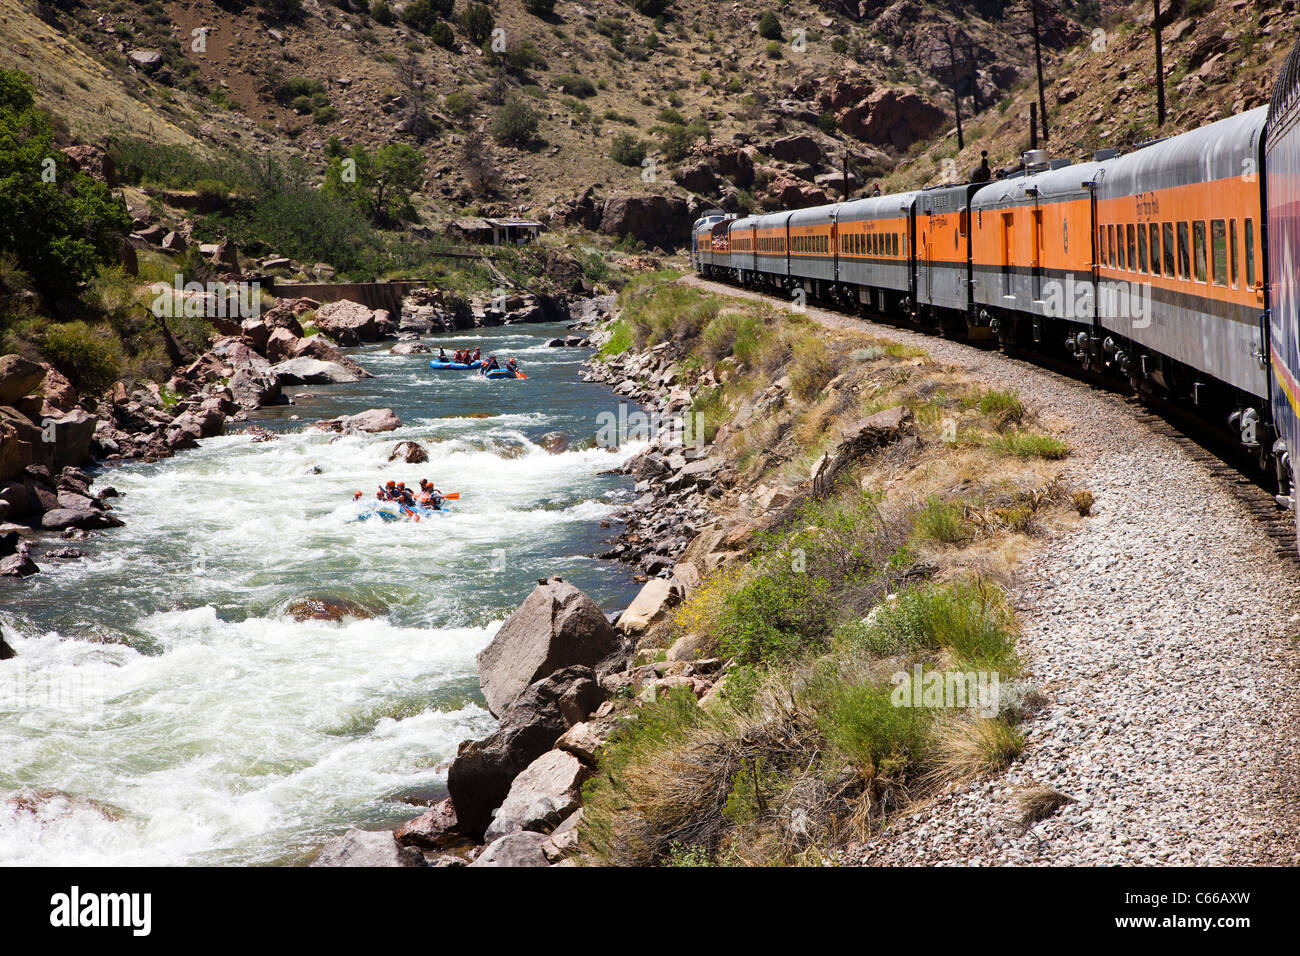 Train touristique populaire passe par les 1 000' de profond Royal Gorge Route le long de la rivière Arkansas, Colorado, USA Banque D'Images